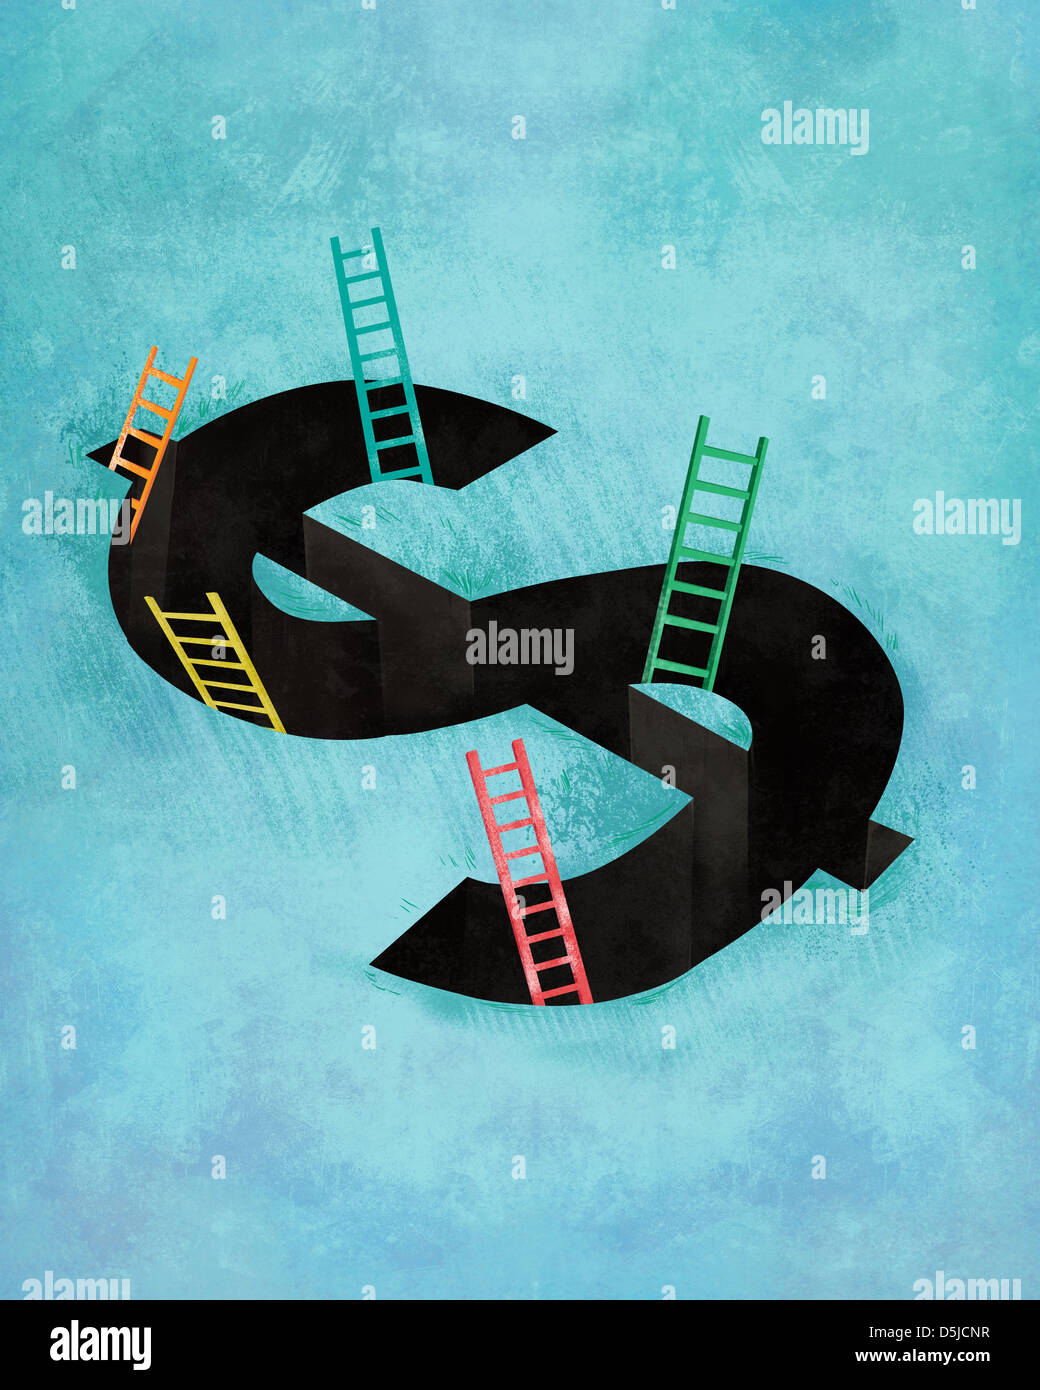 Imagen ilustrativa del signo de dólar con escaleras que representa salir de la deuda Foto de stock